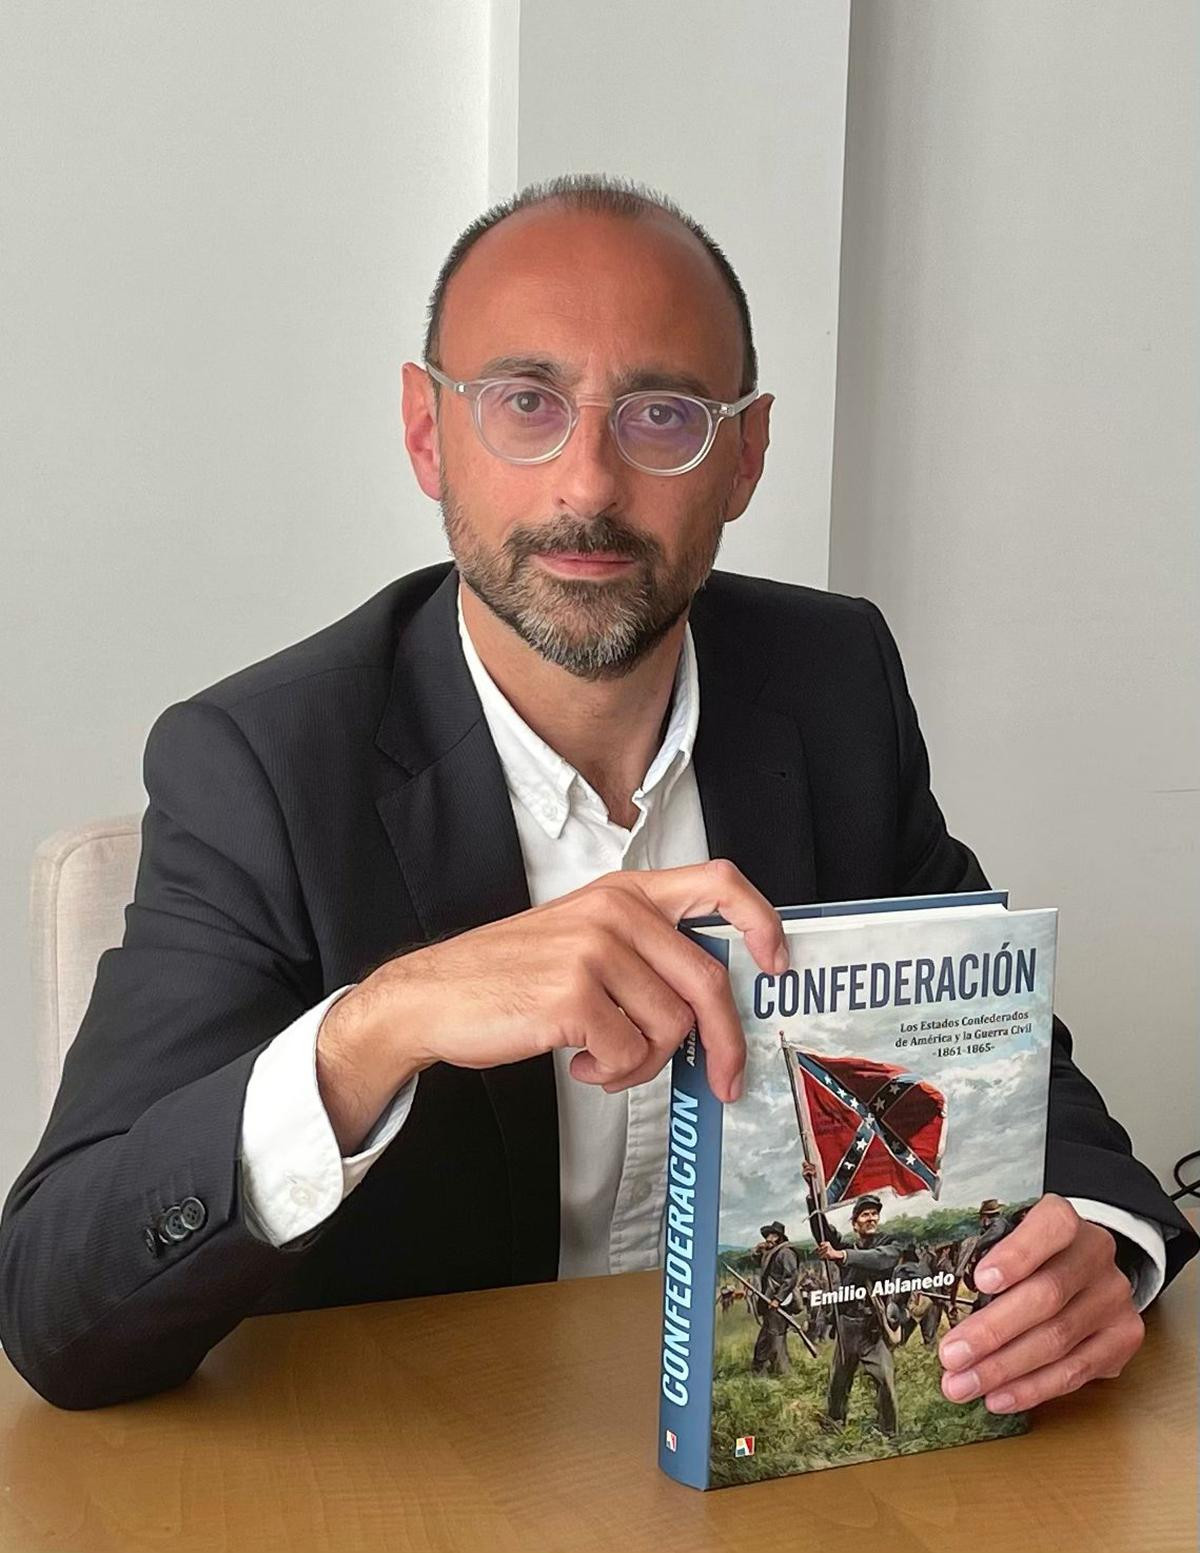 Emilio Ablanedo, autor del libro 'Confederación'